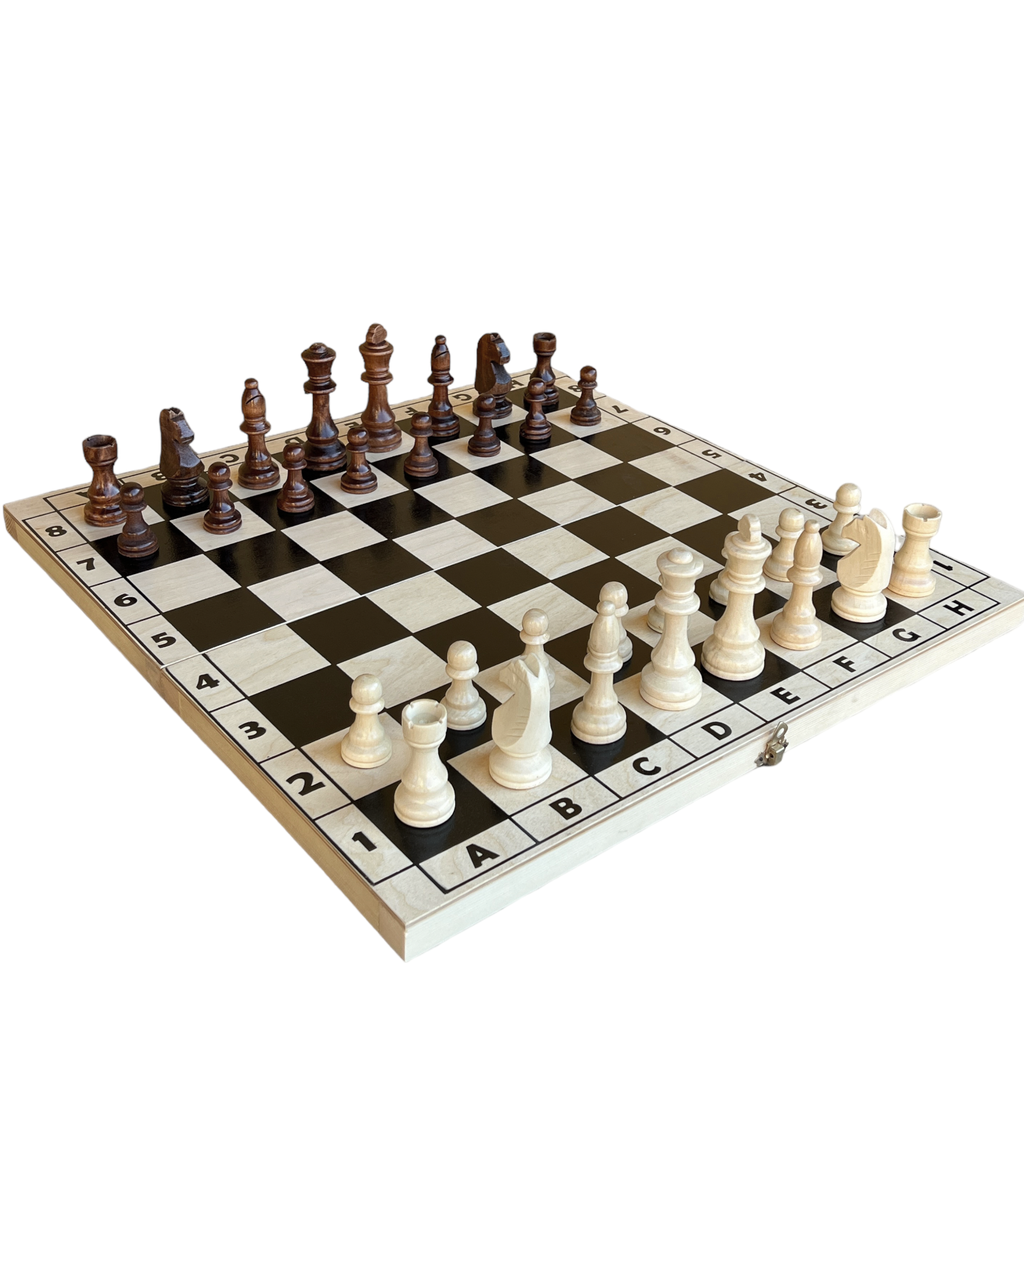 Шахи, нарди, шашки 3 в 1 - Набір ігровий дерев'яний з великими шахматними фігурами, 53*53 см.